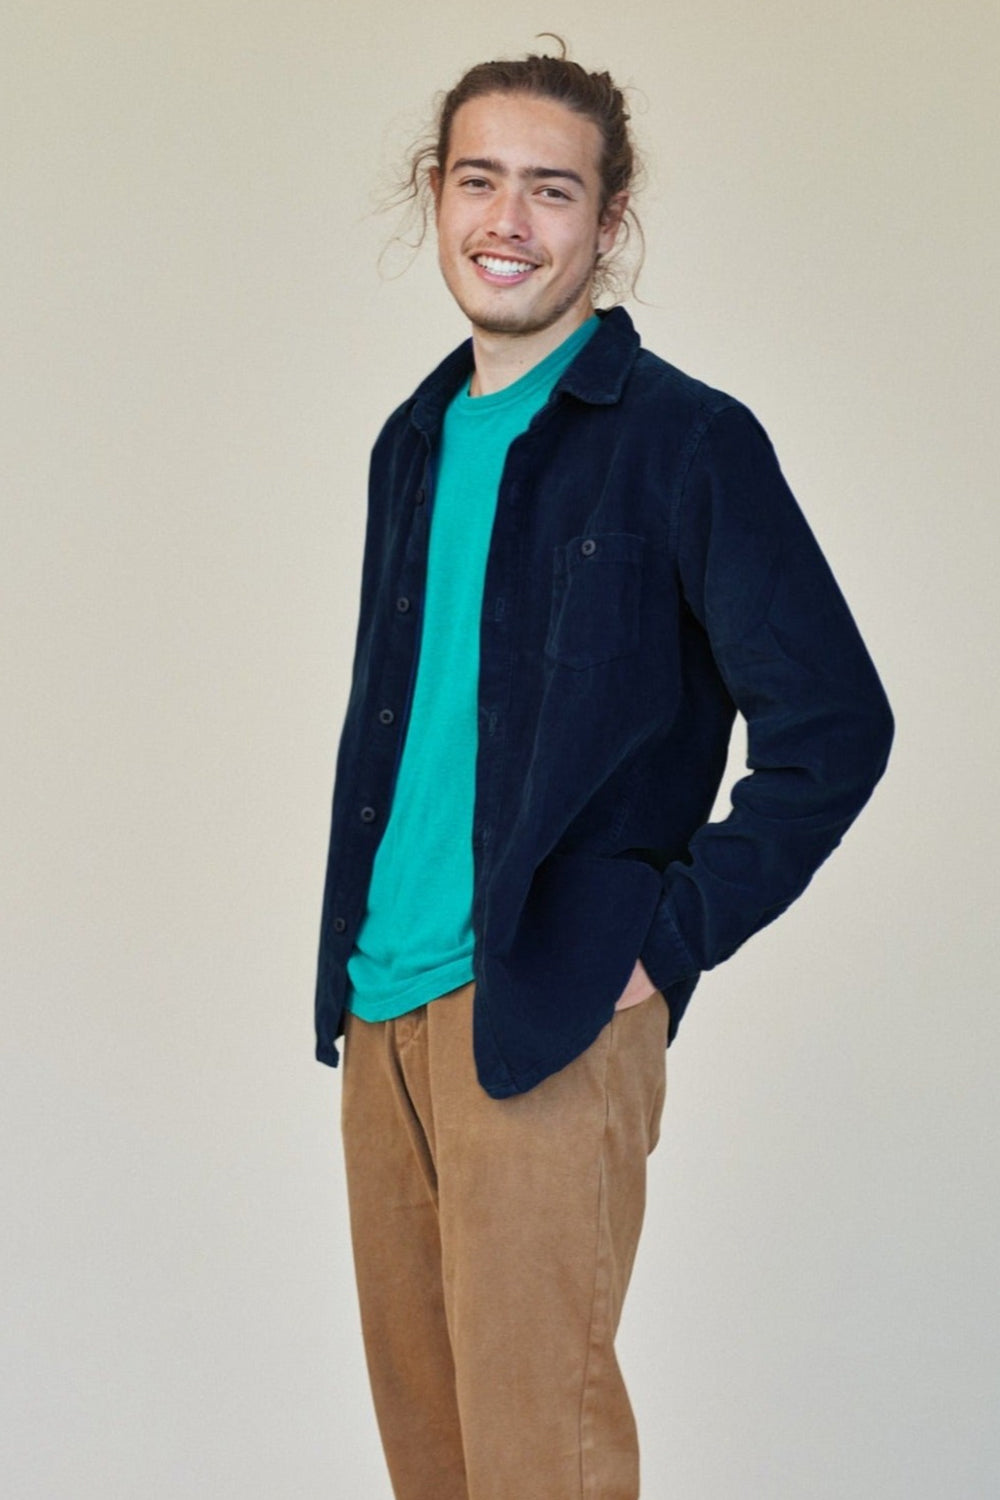 Ventura Shirt | Jungmaven Hemp Clothing & Accessories / model_desc: Conrad is 6’1” wearing L